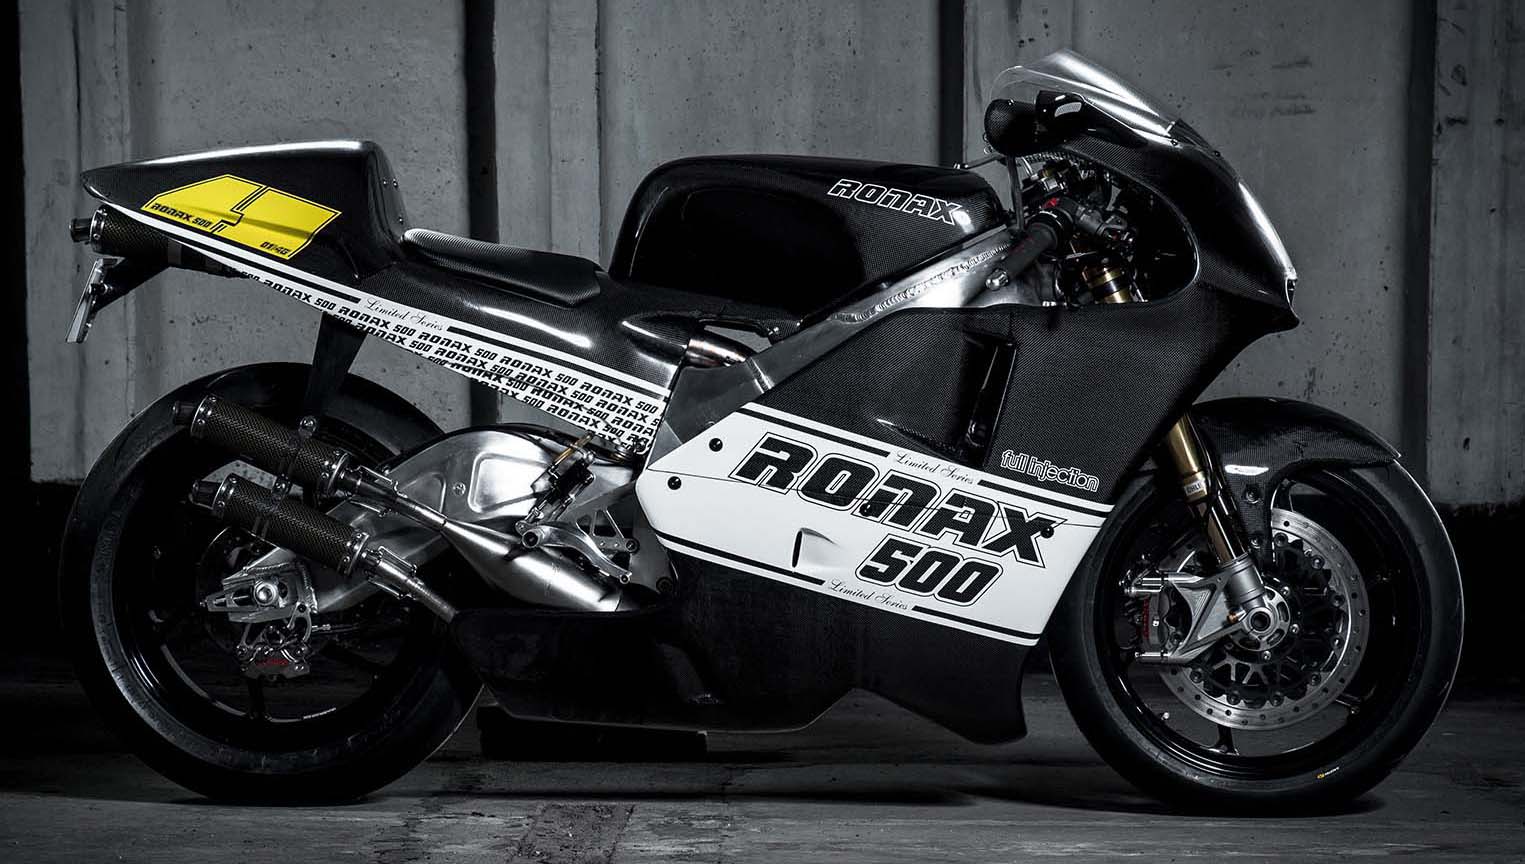 Ronax 500